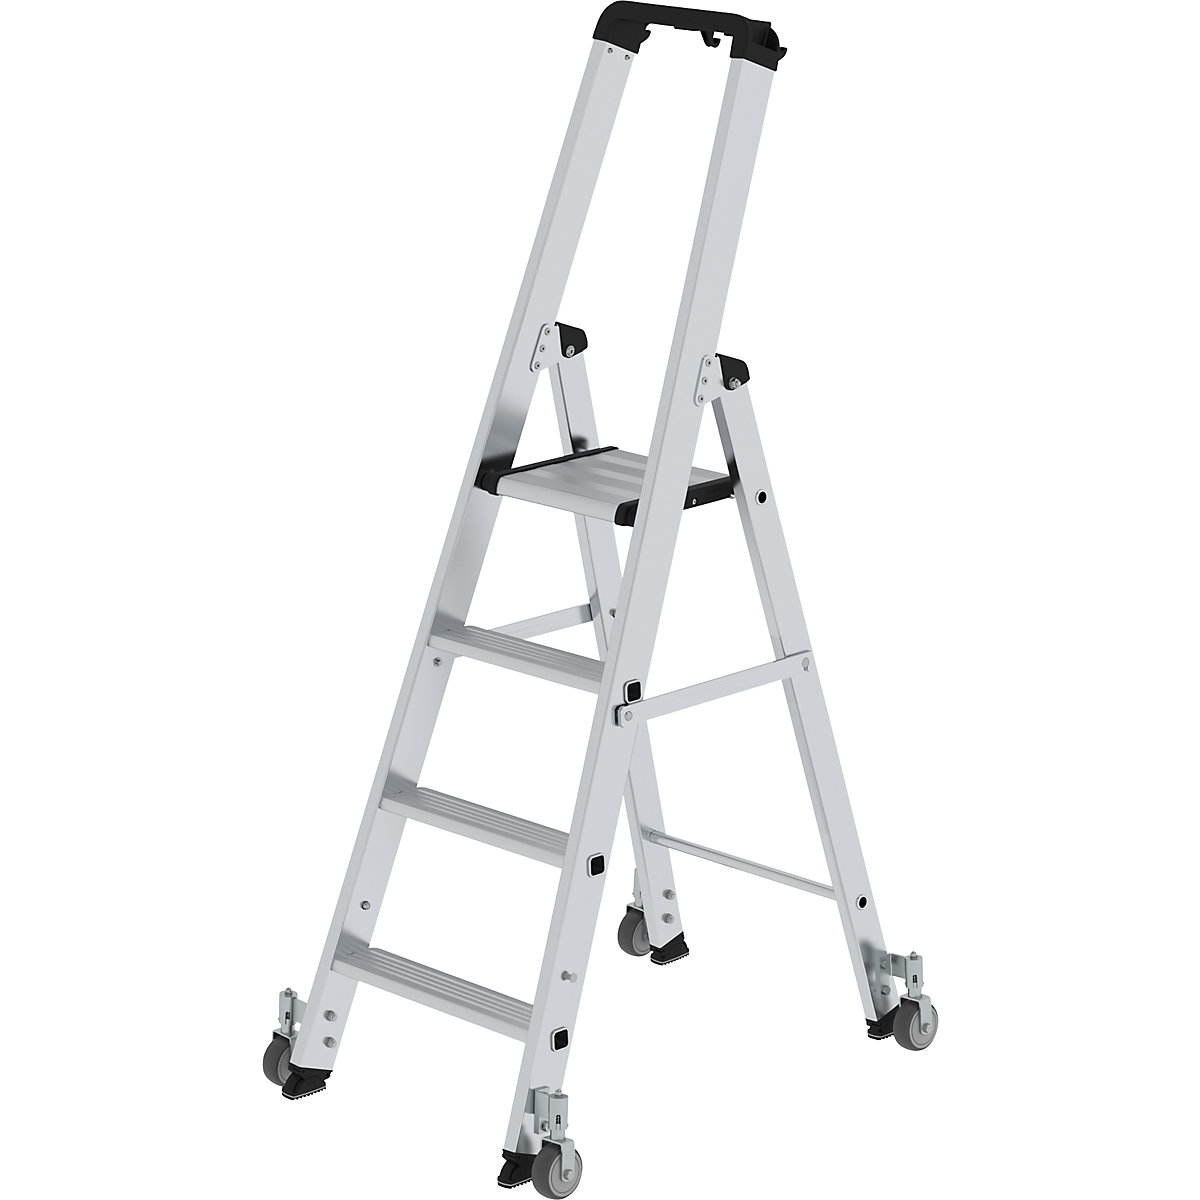 Step ladder, single sided – MUNK, mobile model, 4 steps, platform height 930 mm-10